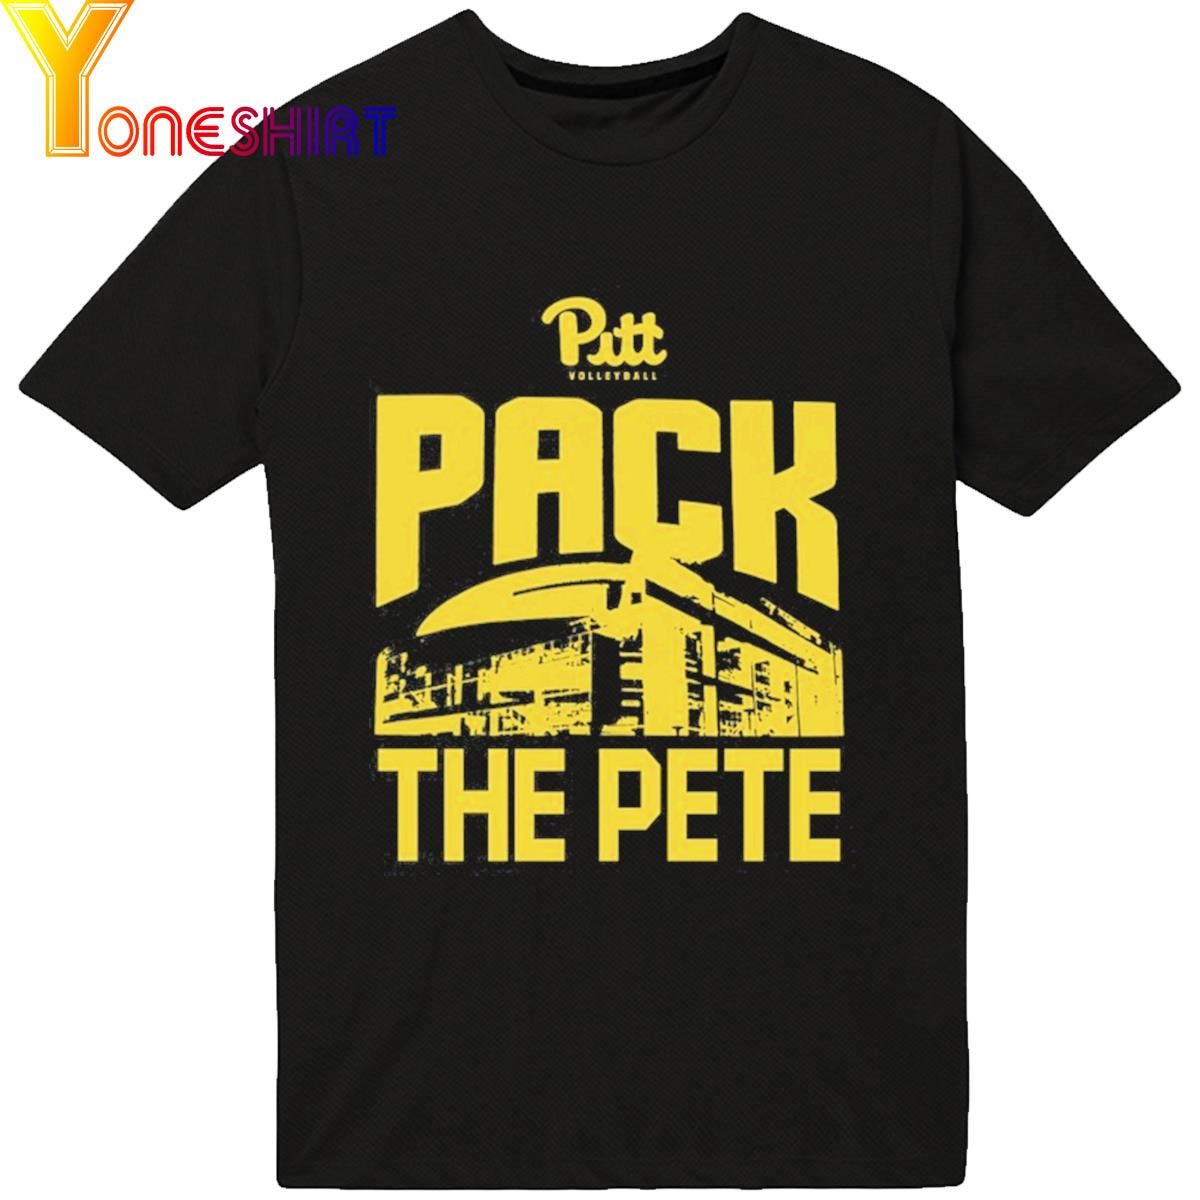 Pitt Volleyball Pack The Pete shirt